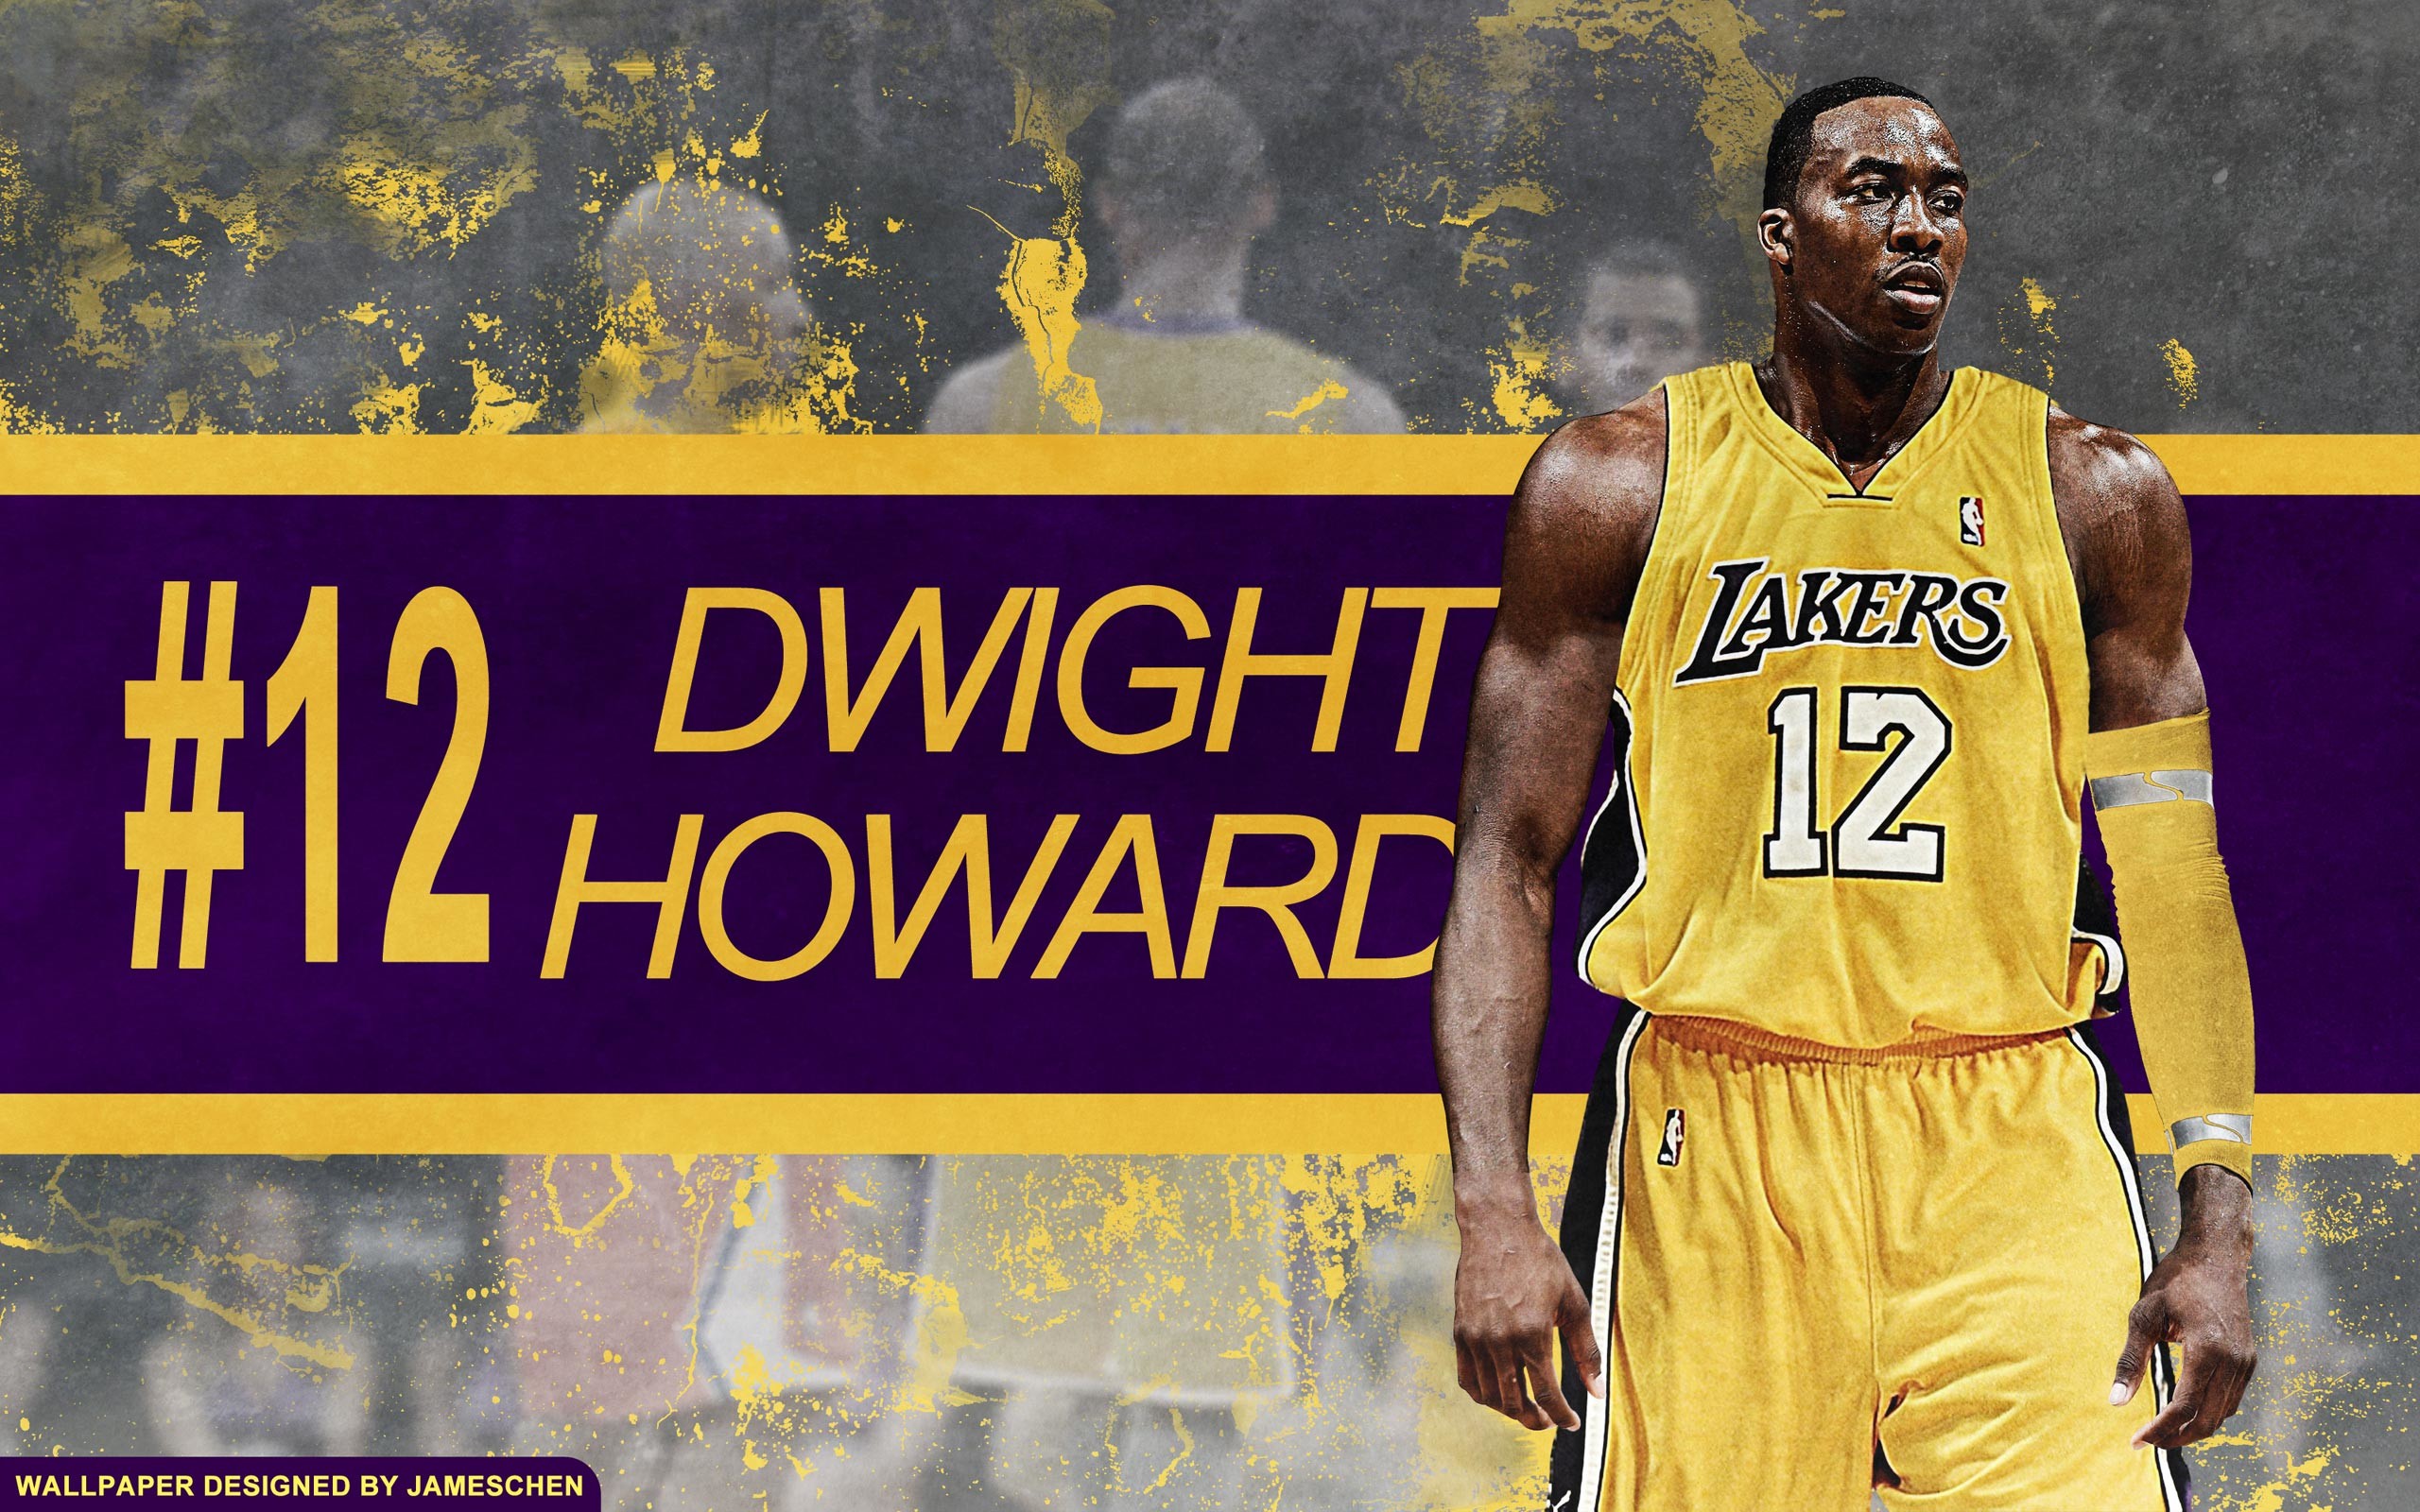 2560x1600 Dwight Howard Wallpaper - In Lakers Jersey 12